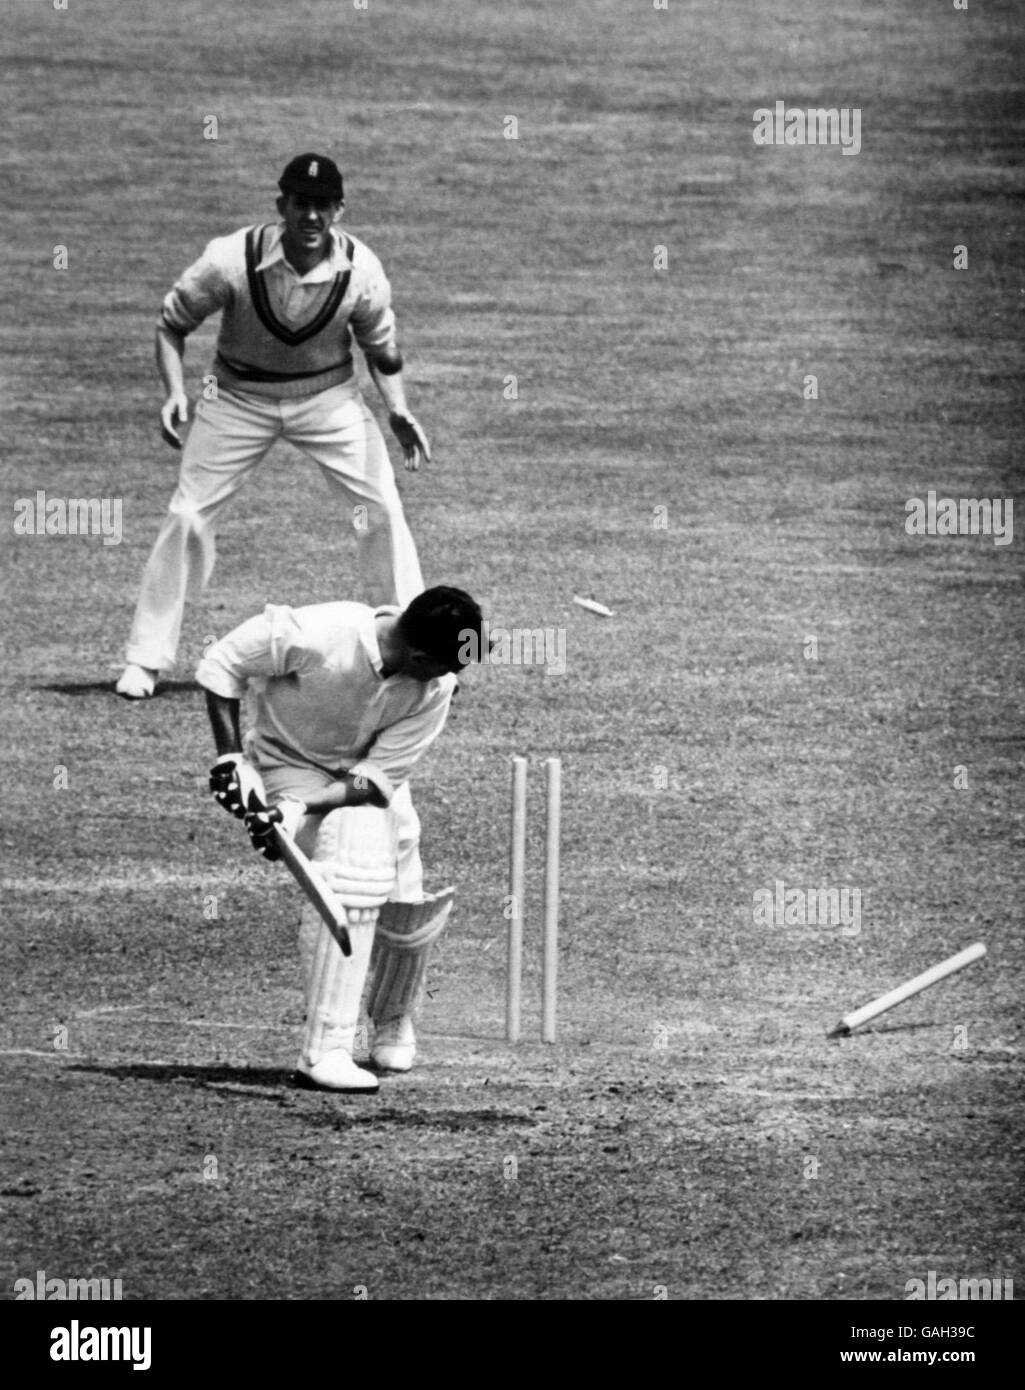 Cricket - Herren gegen Spieler - Lord's - zweiter Tag. Der Herren George Heane schaut sich um, um zu sehen, wie sein Wicket vollständig gebrochen ist Stockfoto